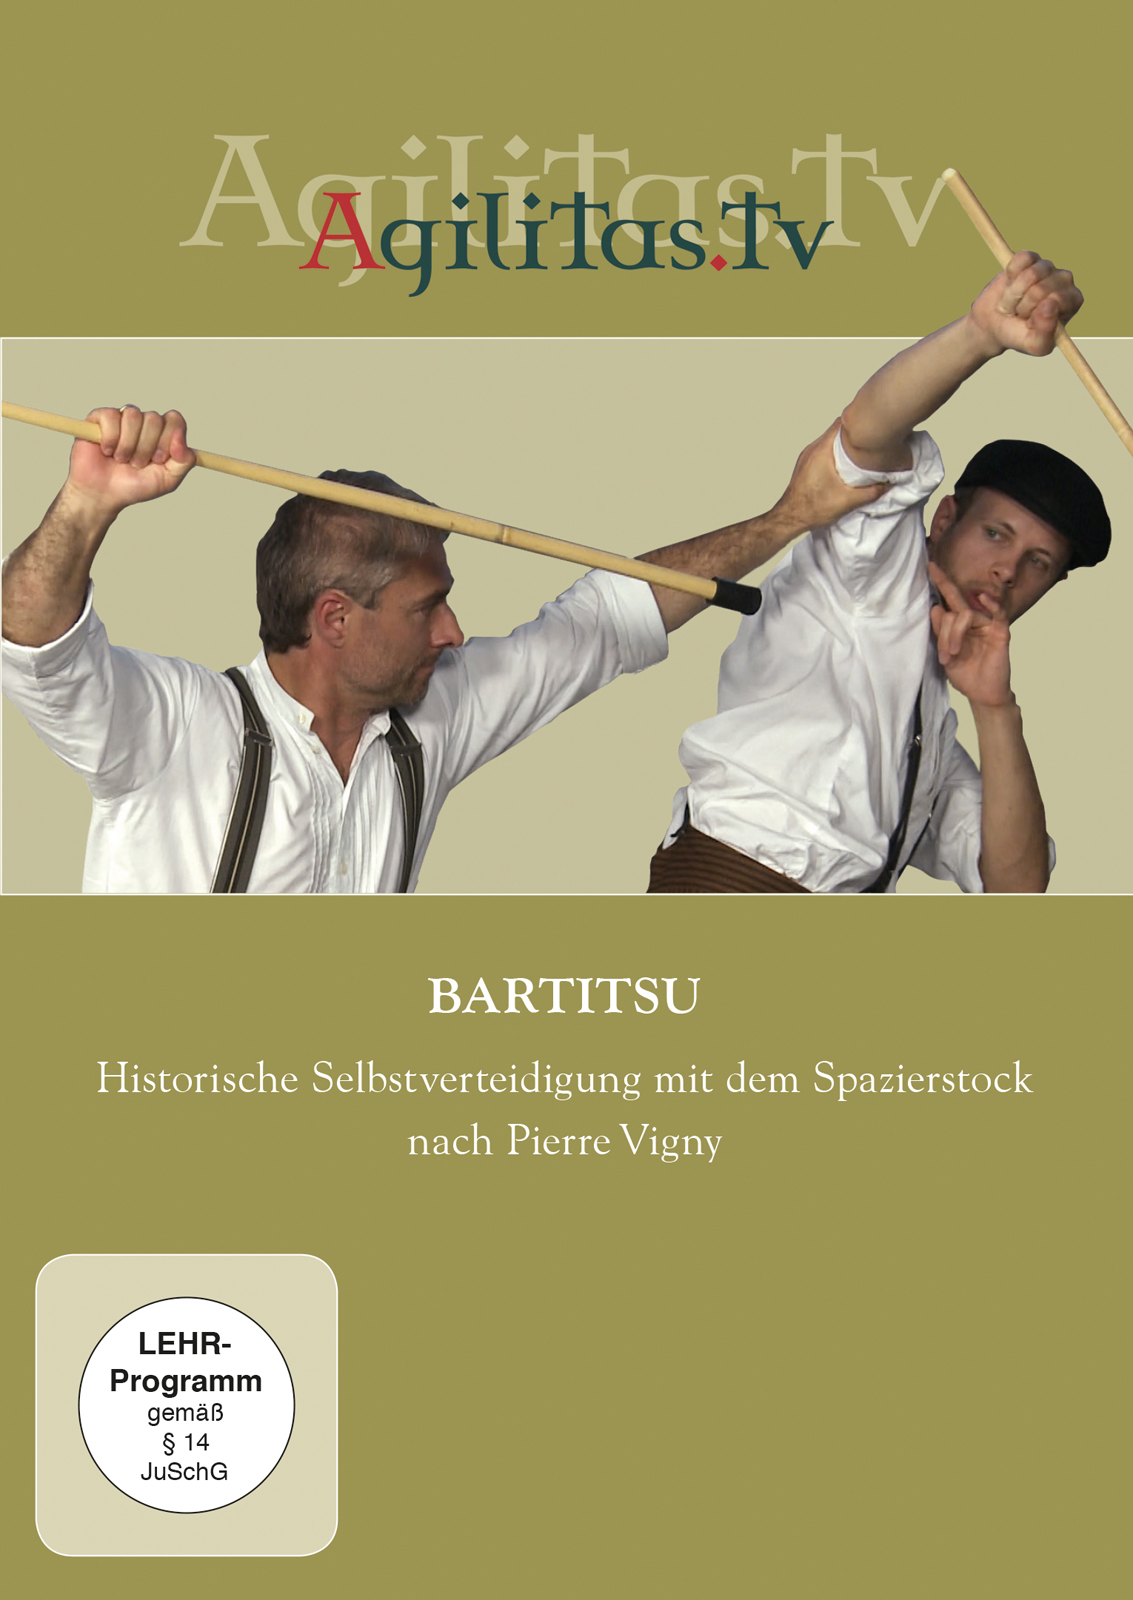 Bartitsu - Historische Selbstverteidigung mit dem Spazierstock nach Pierre Vigny